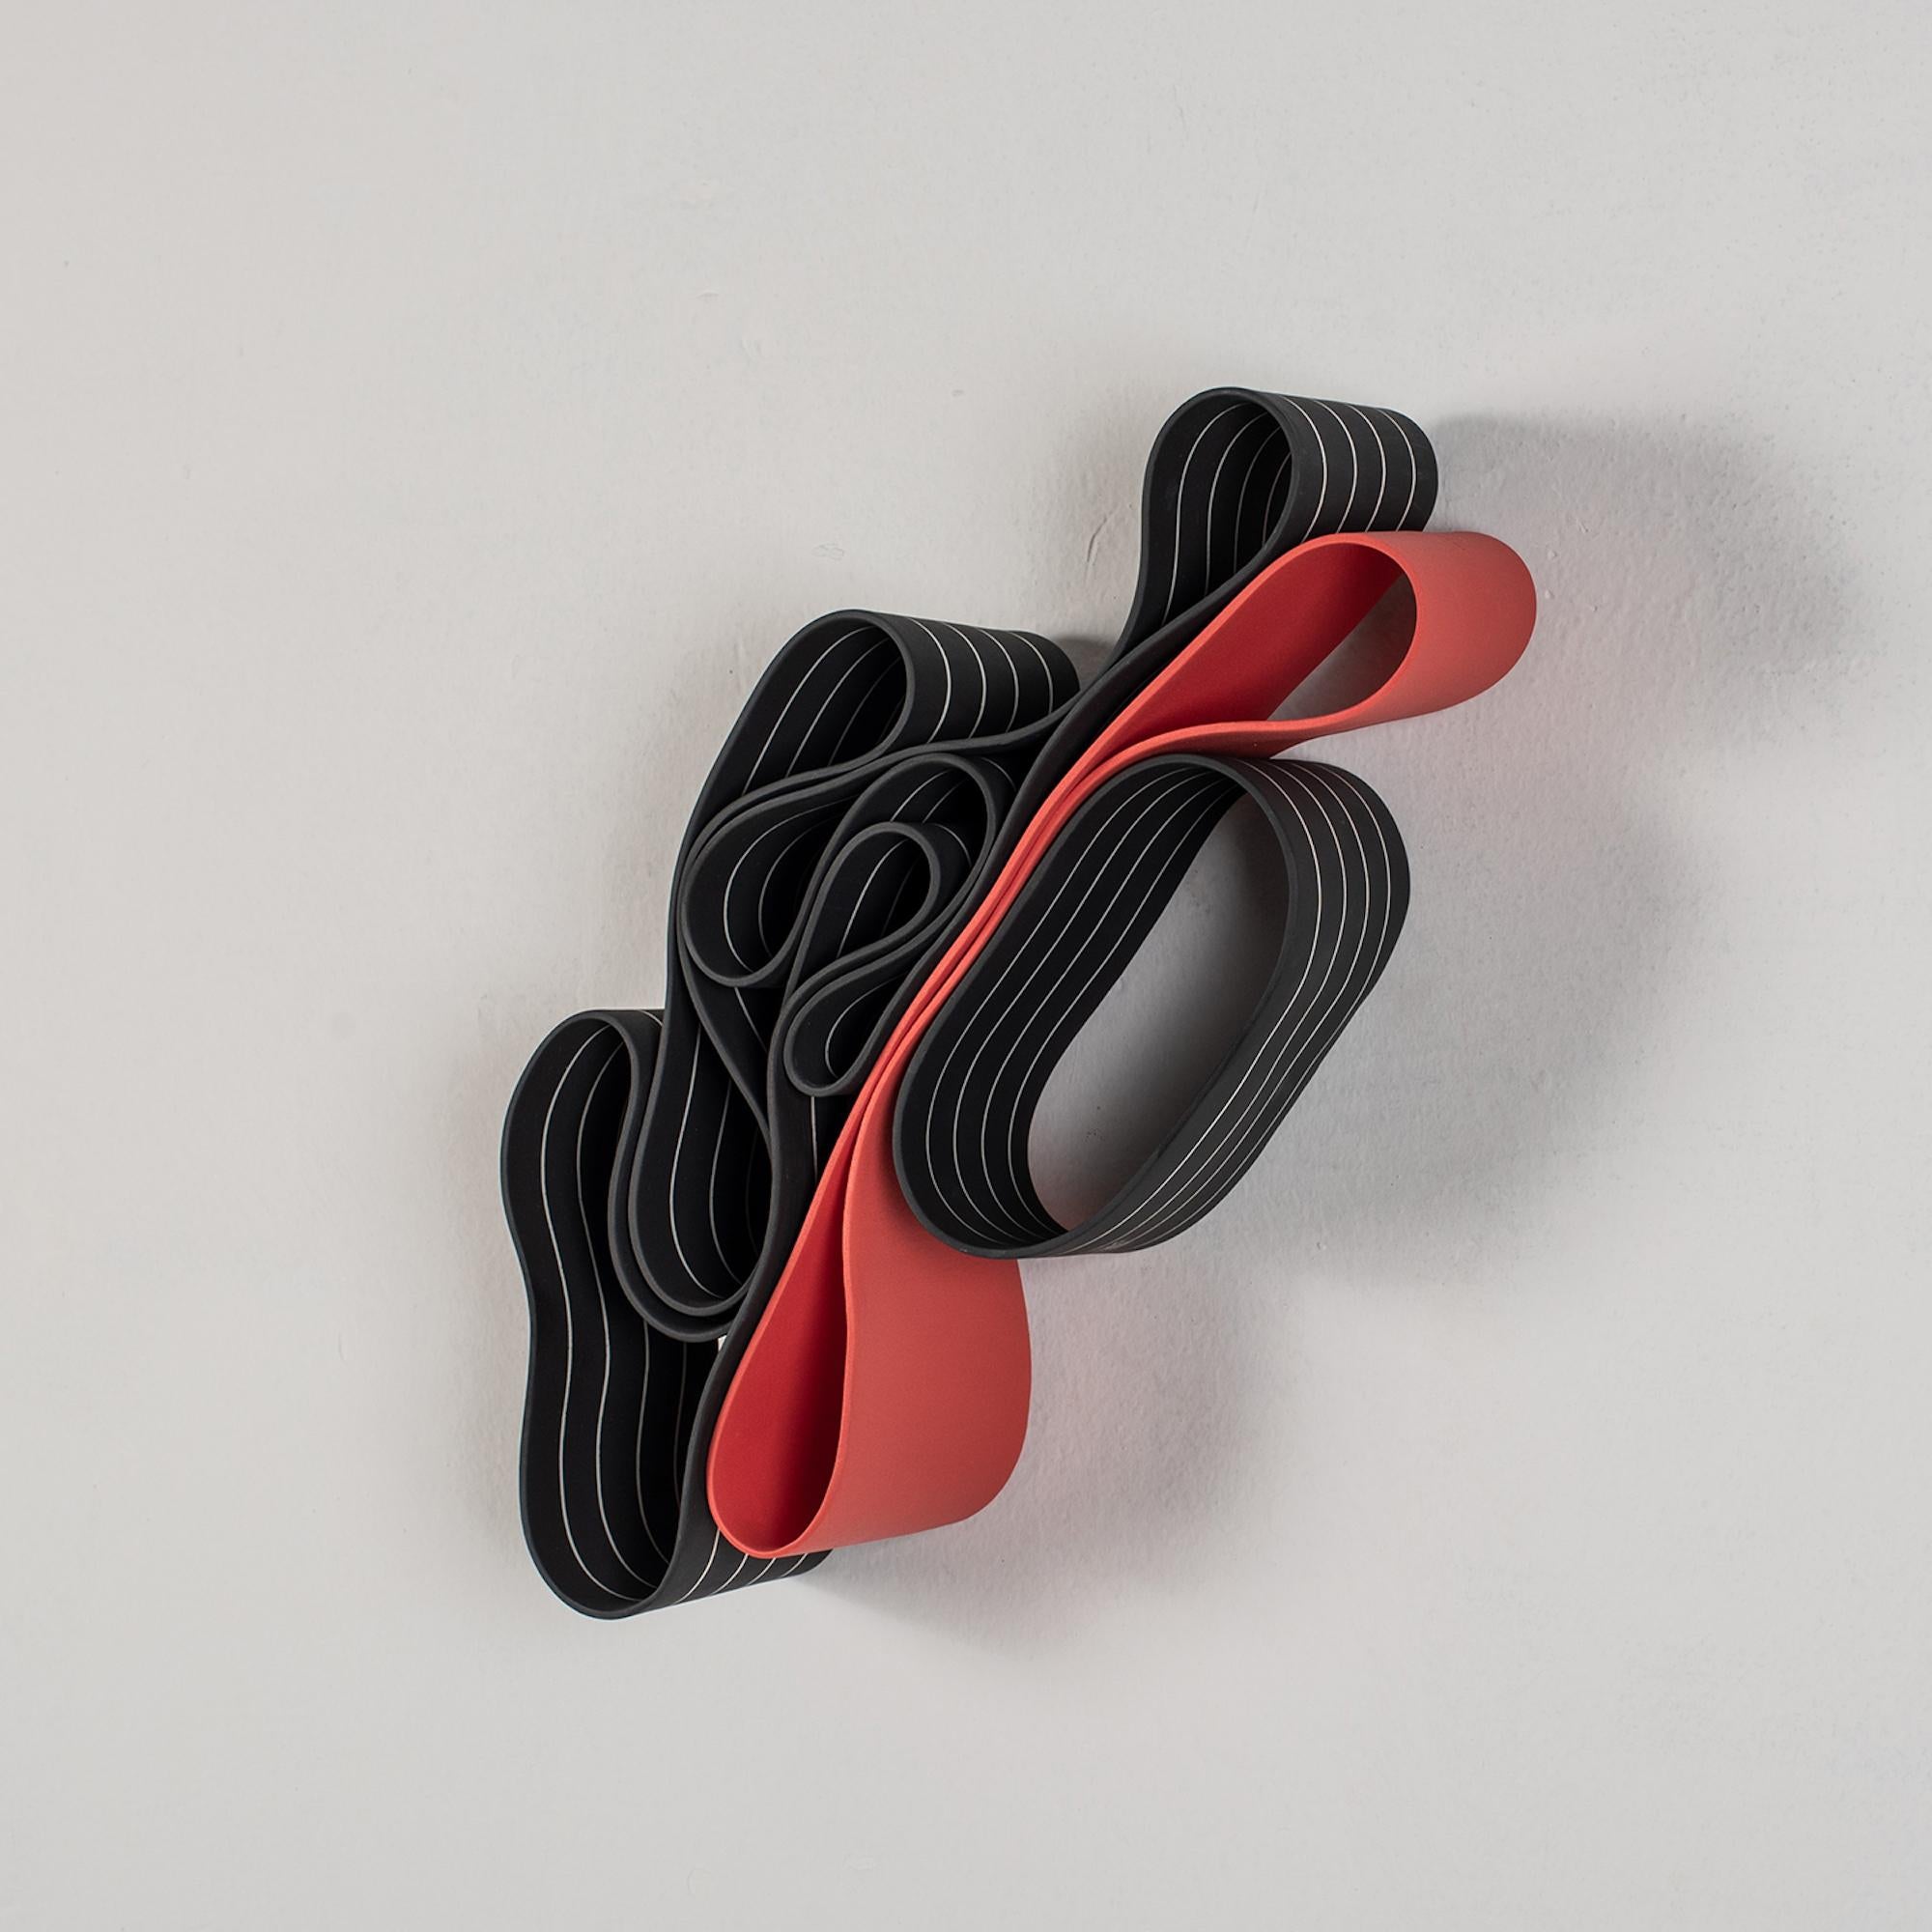 Ands Objects for Objects #2 de Simcha Even-Chen - Sculpture en porcelaine, rouge et noir, lignes en vente 2